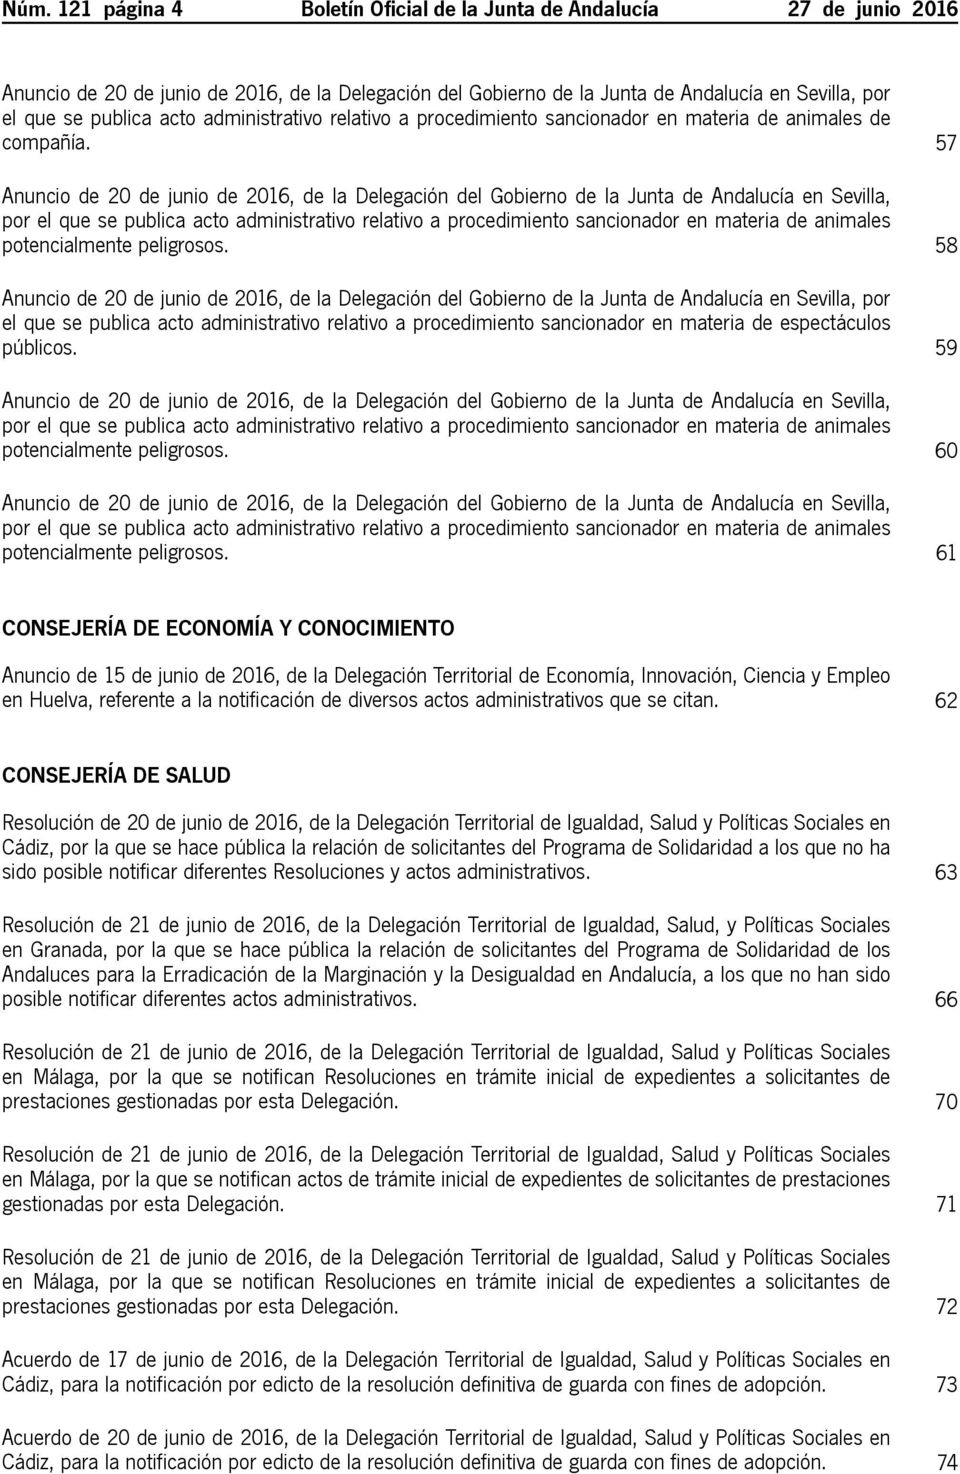 57 Anuncio de 20 de junio de 2016, de la Delegación del Gobierno de la Junta de Andalucía en Sevilla, por el que se publica acto administrativo relativo a procedimiento sancionador en materia de